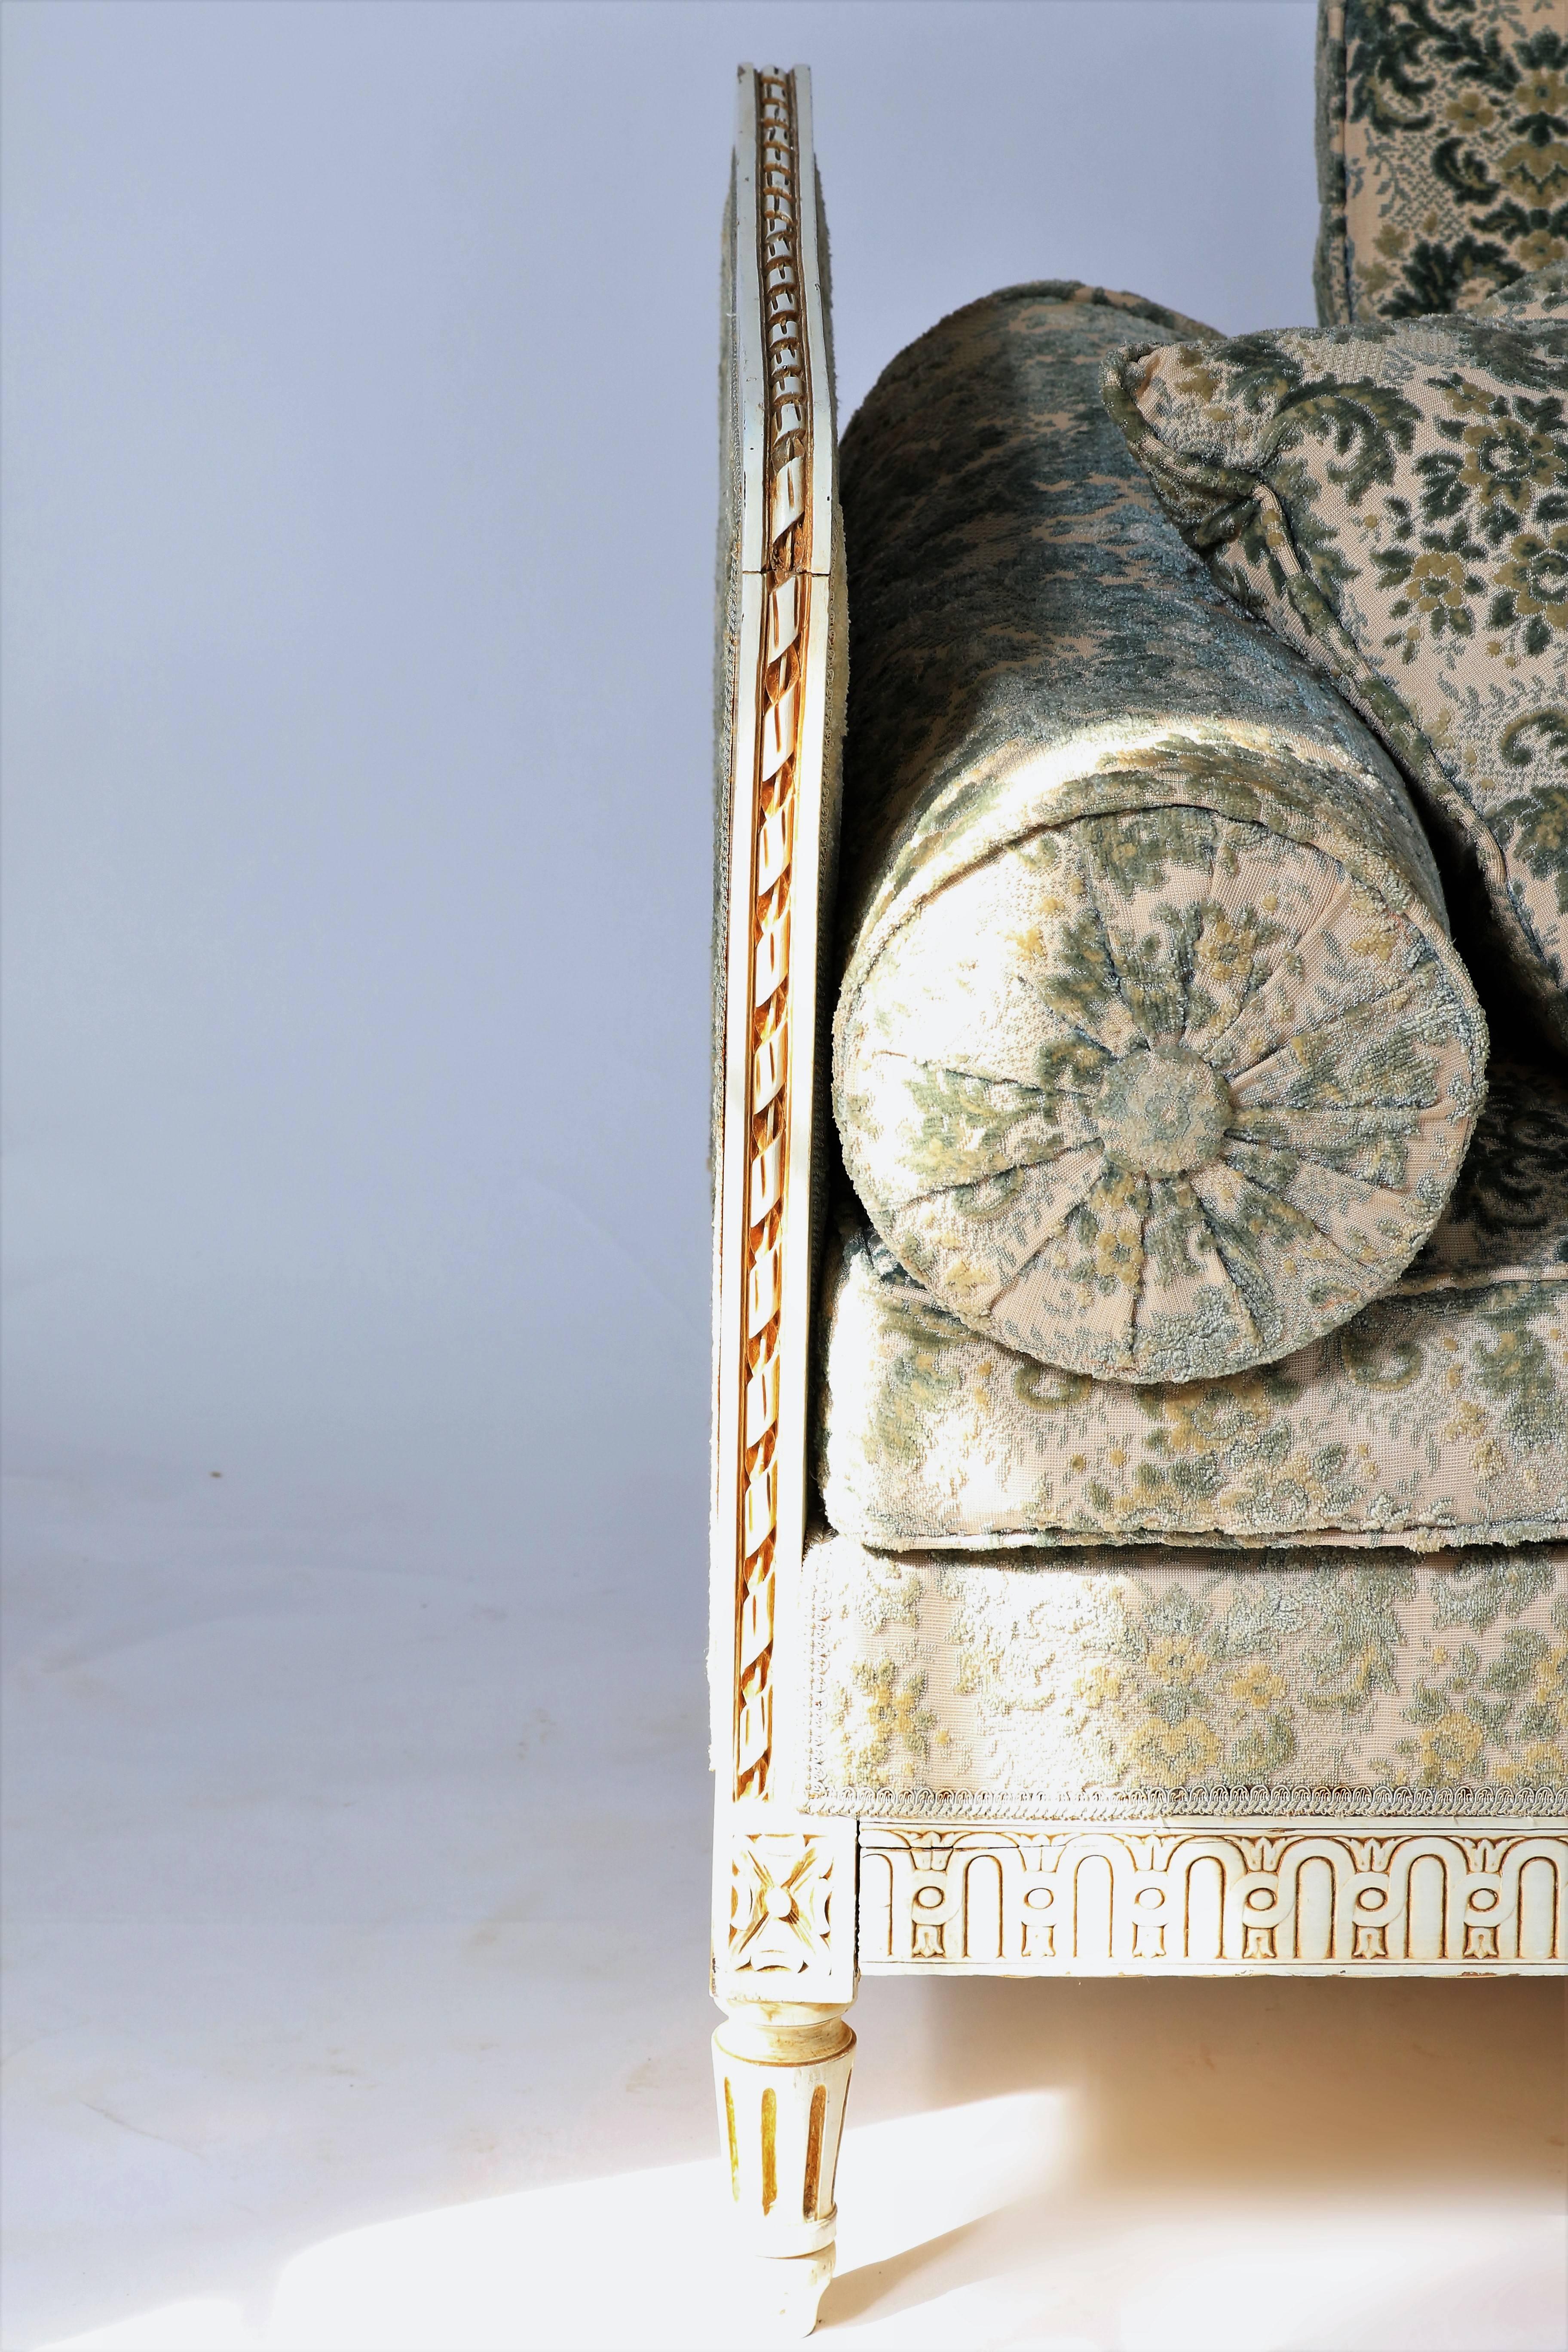 Ravissante banquette de style Louis XVI en bois rechampi et doré. Pieds cannelés, belle tapisserie bleue à décors floraux. Un petit levier placé sur le côté du banc permet de replier l'un des côtés afin de le transformer en méridienne.

Le